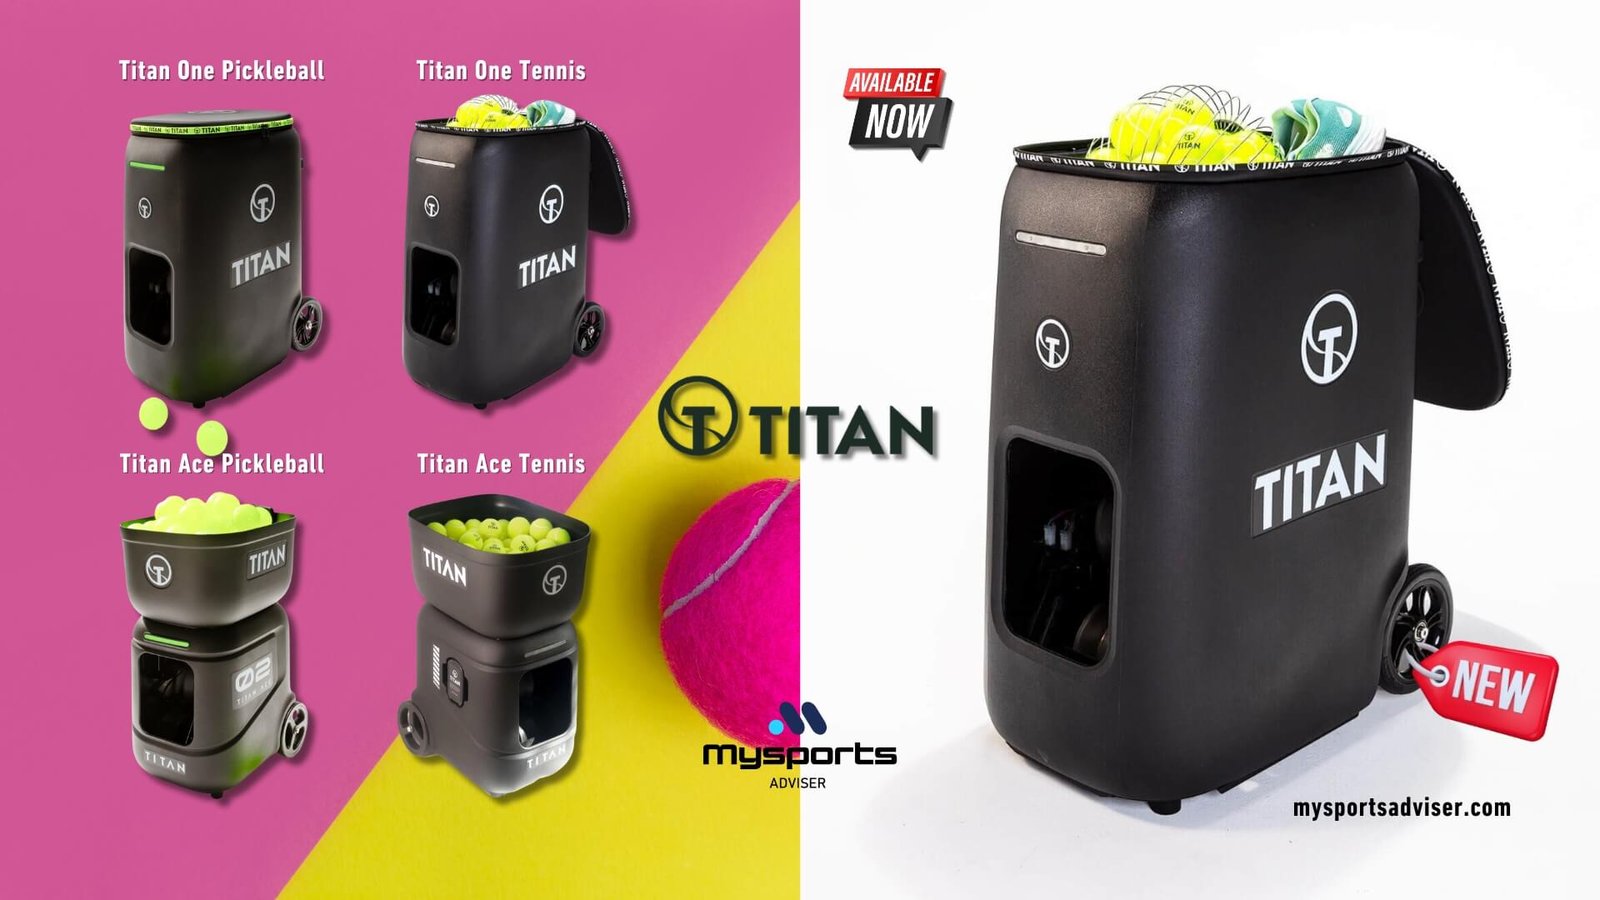 Titan tennis ball machine Titan pickleball machine discount code all products